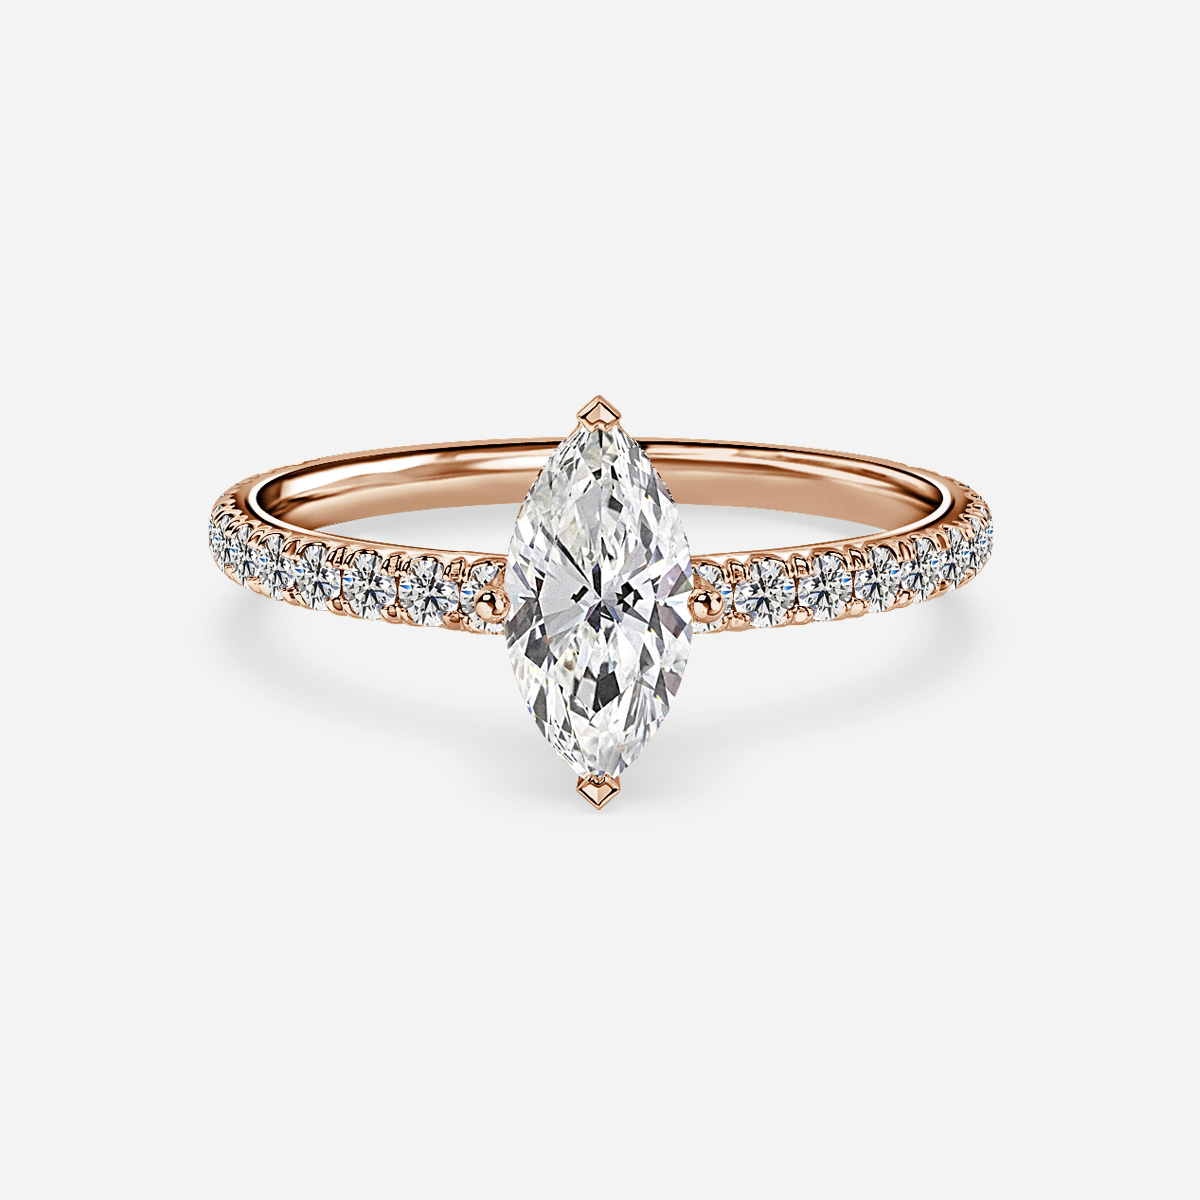 Sadie Rose Gold Engagement Ring